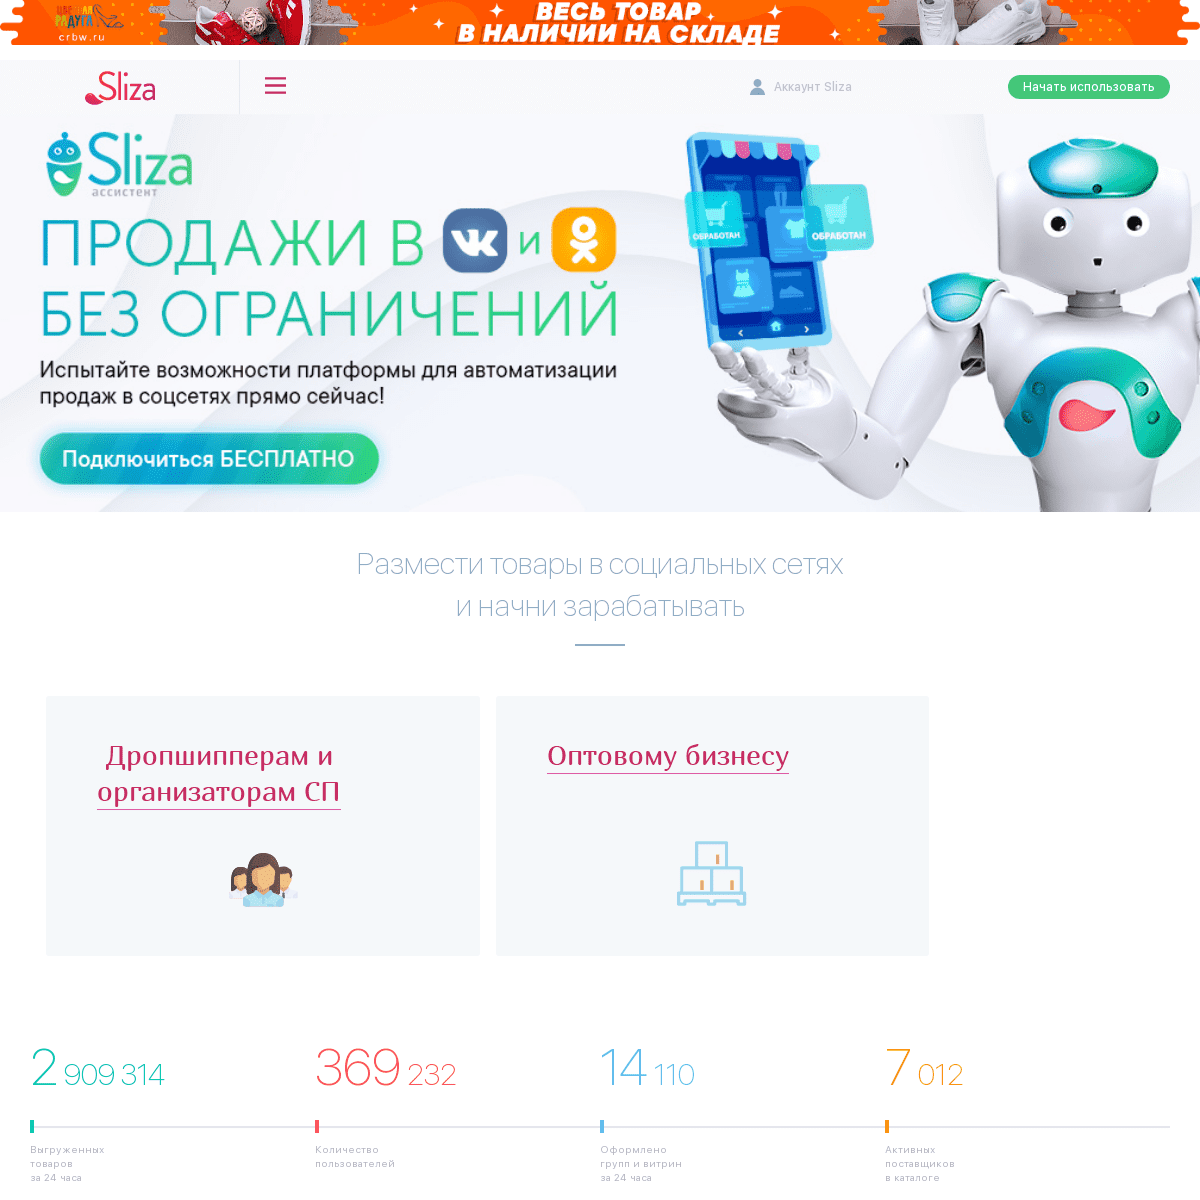 A complete backup of sliza.ru